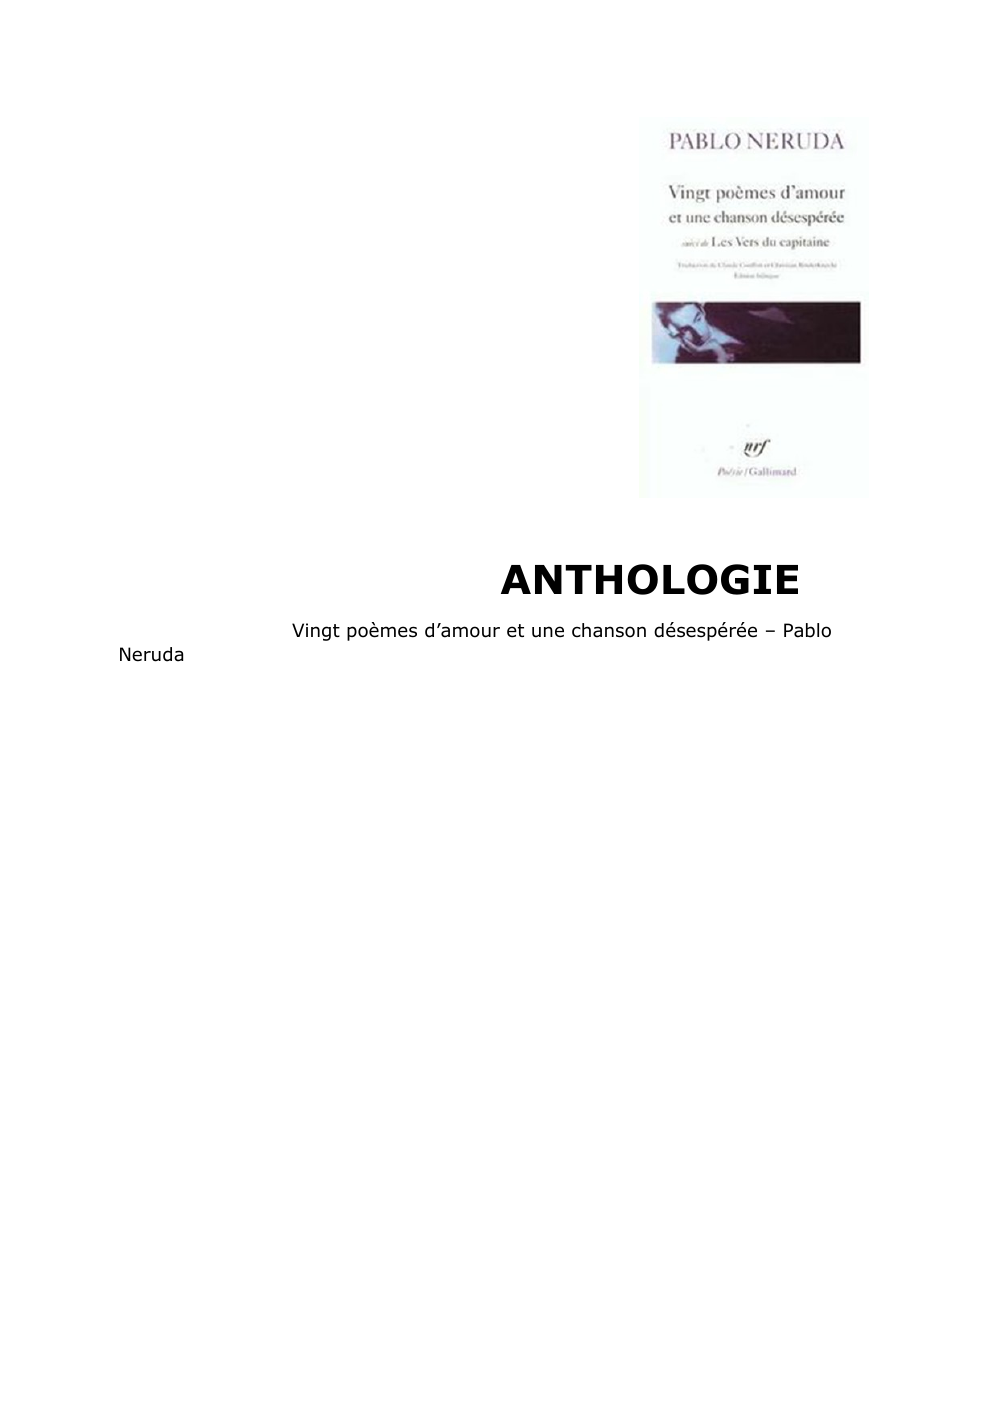 Prévisualisation du document ANTHOLOGIE - Pablo Neruda poèmes d'amour.ort